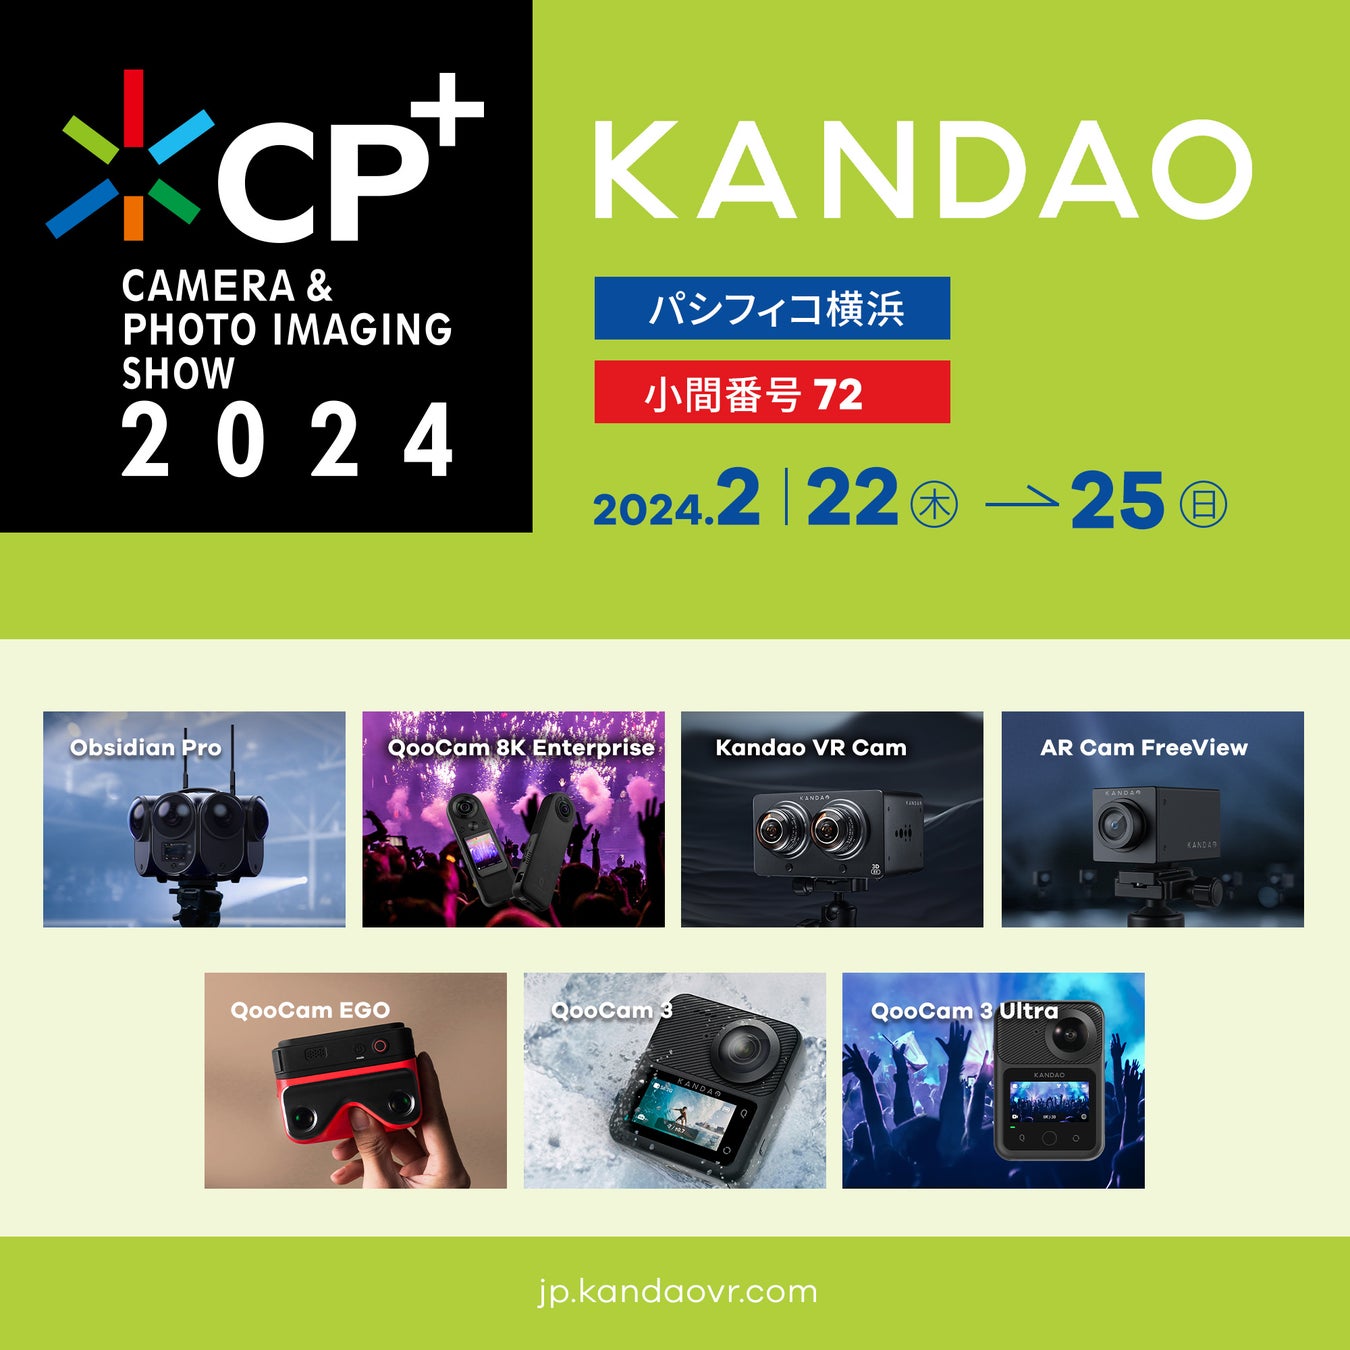 2024 Kandao Japan CP+